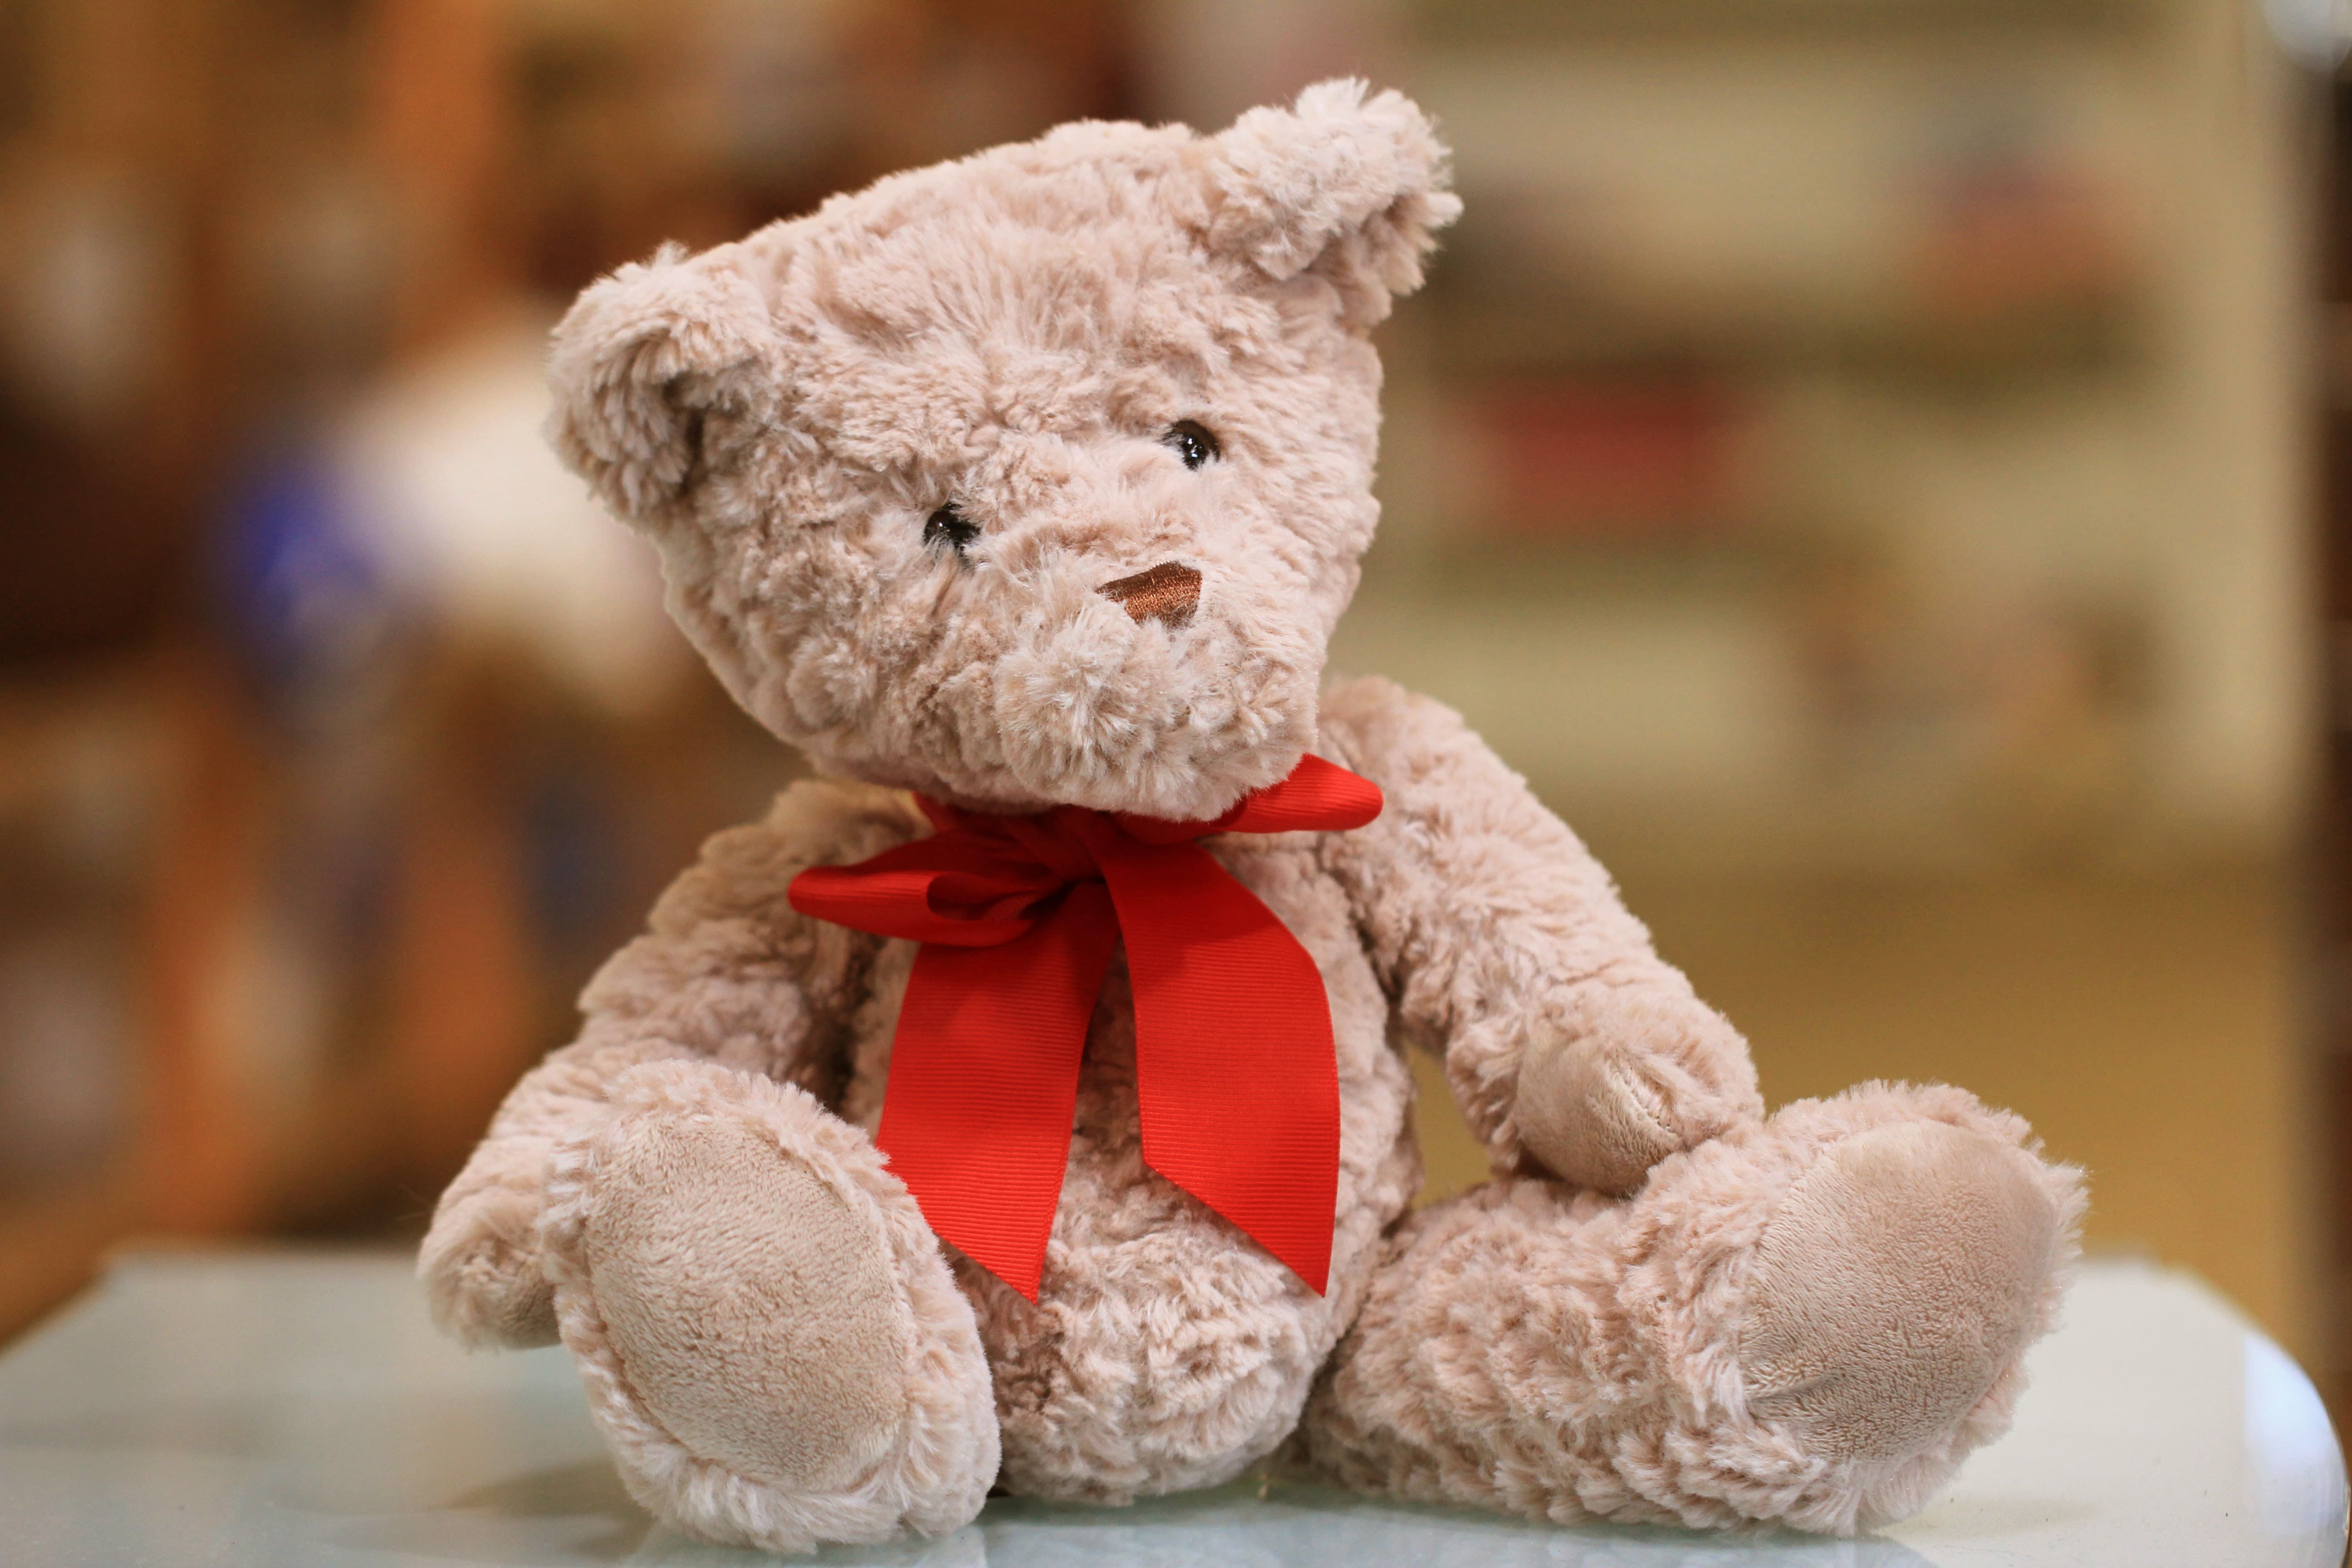 A cute stuffed teddy bear